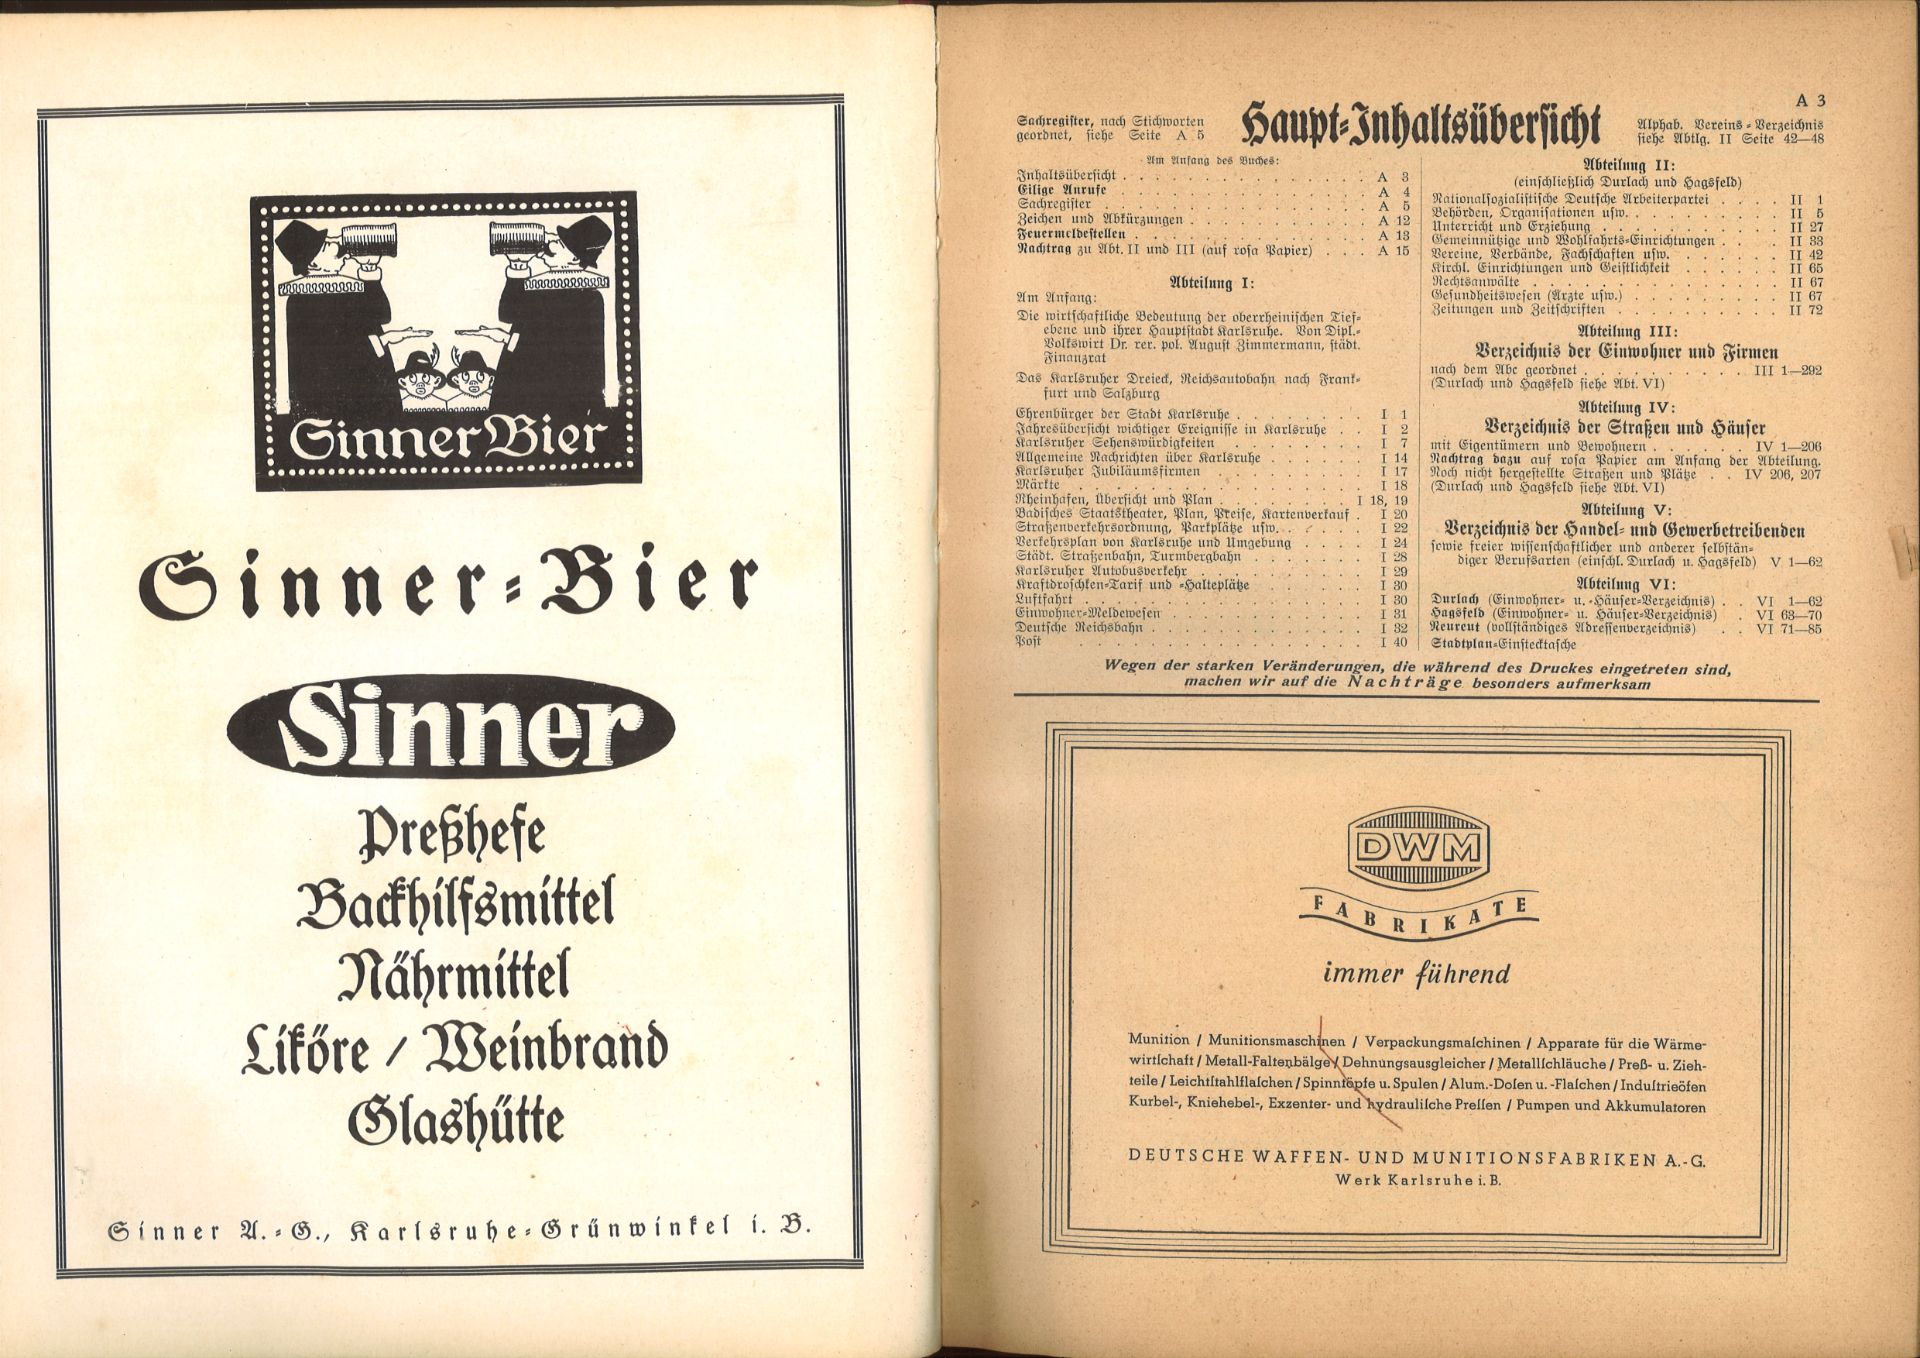 Adressbuch der Stadt Karlsruhe von 1939, sechsundsechzigster Jahrgang, Adressbuchverlag G. Braun, - Image 2 of 2